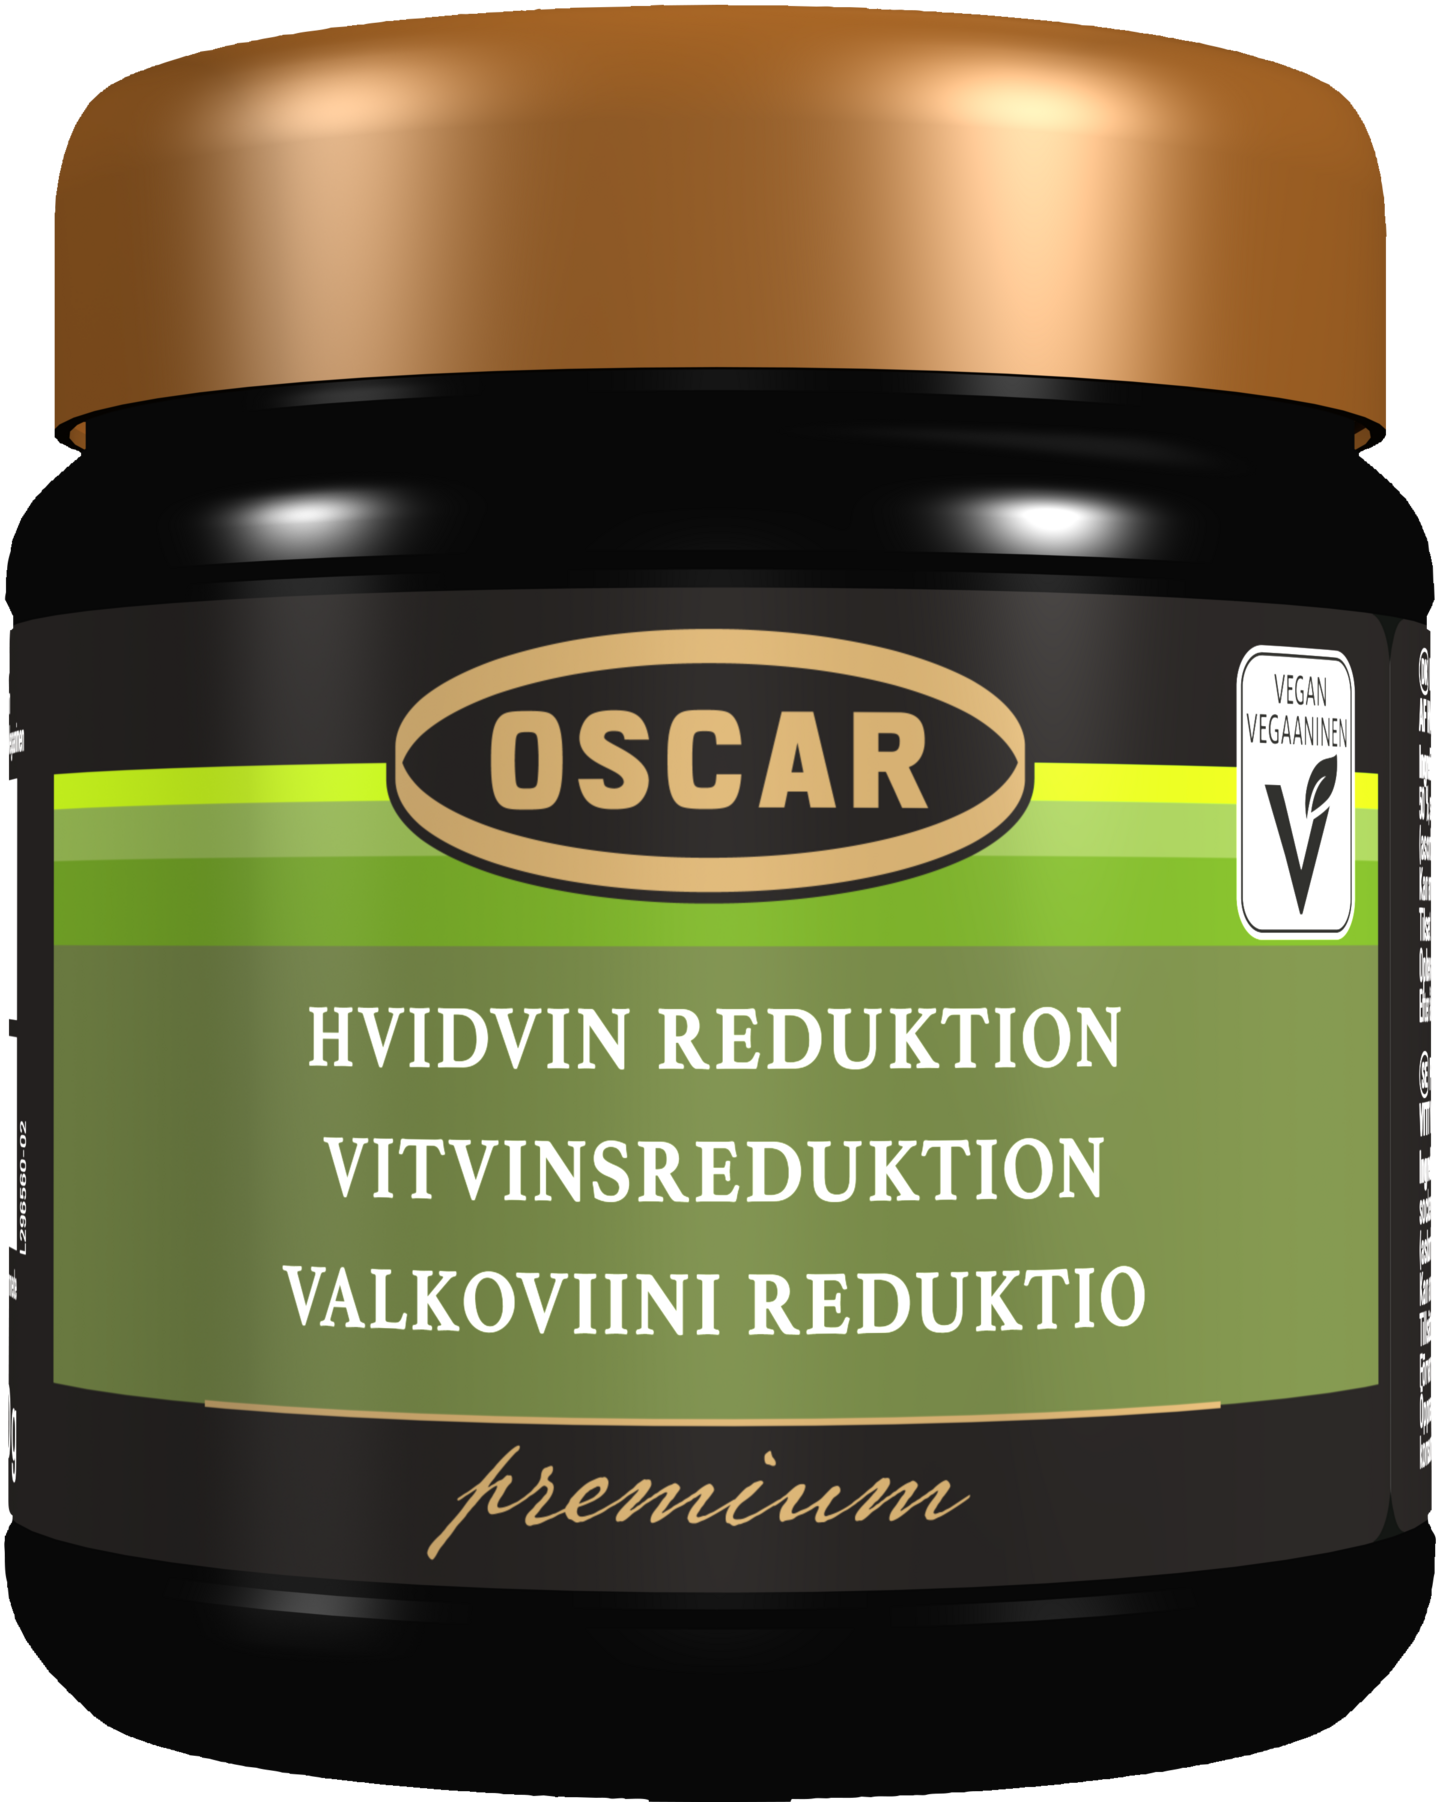 Oscar Premium Valkoviinireduktiota sisältävä maustetahna 450g